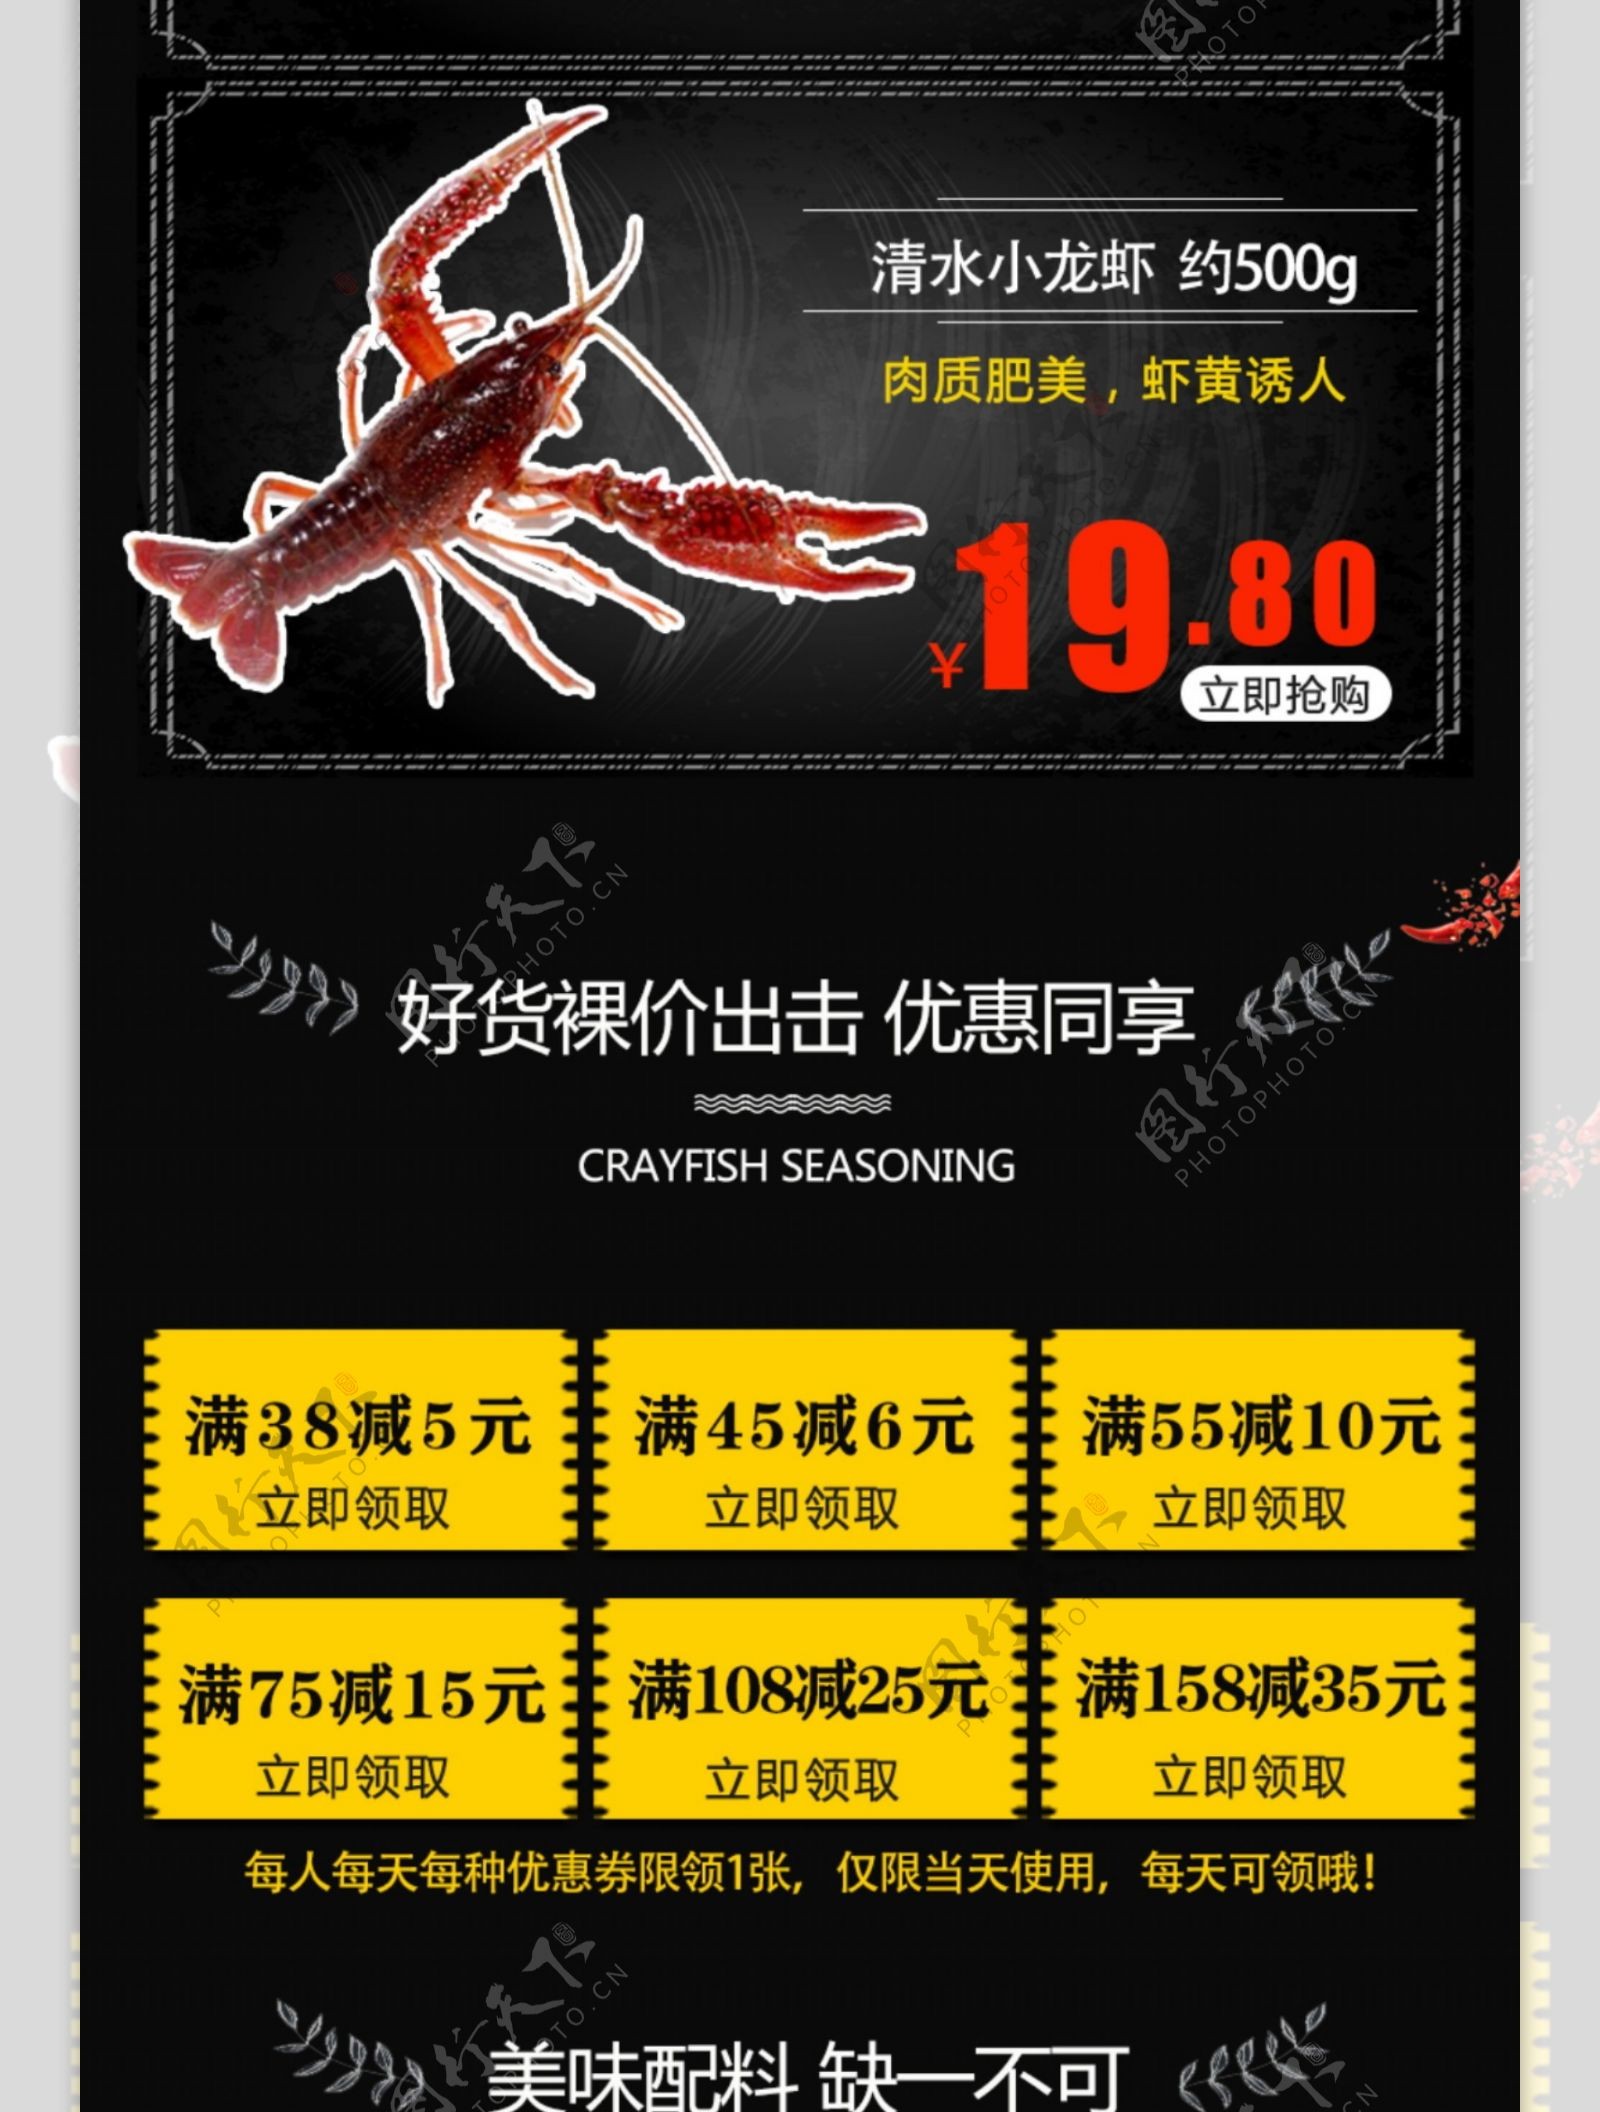 小龙虾促销商品活动手机首页黑色红色模板